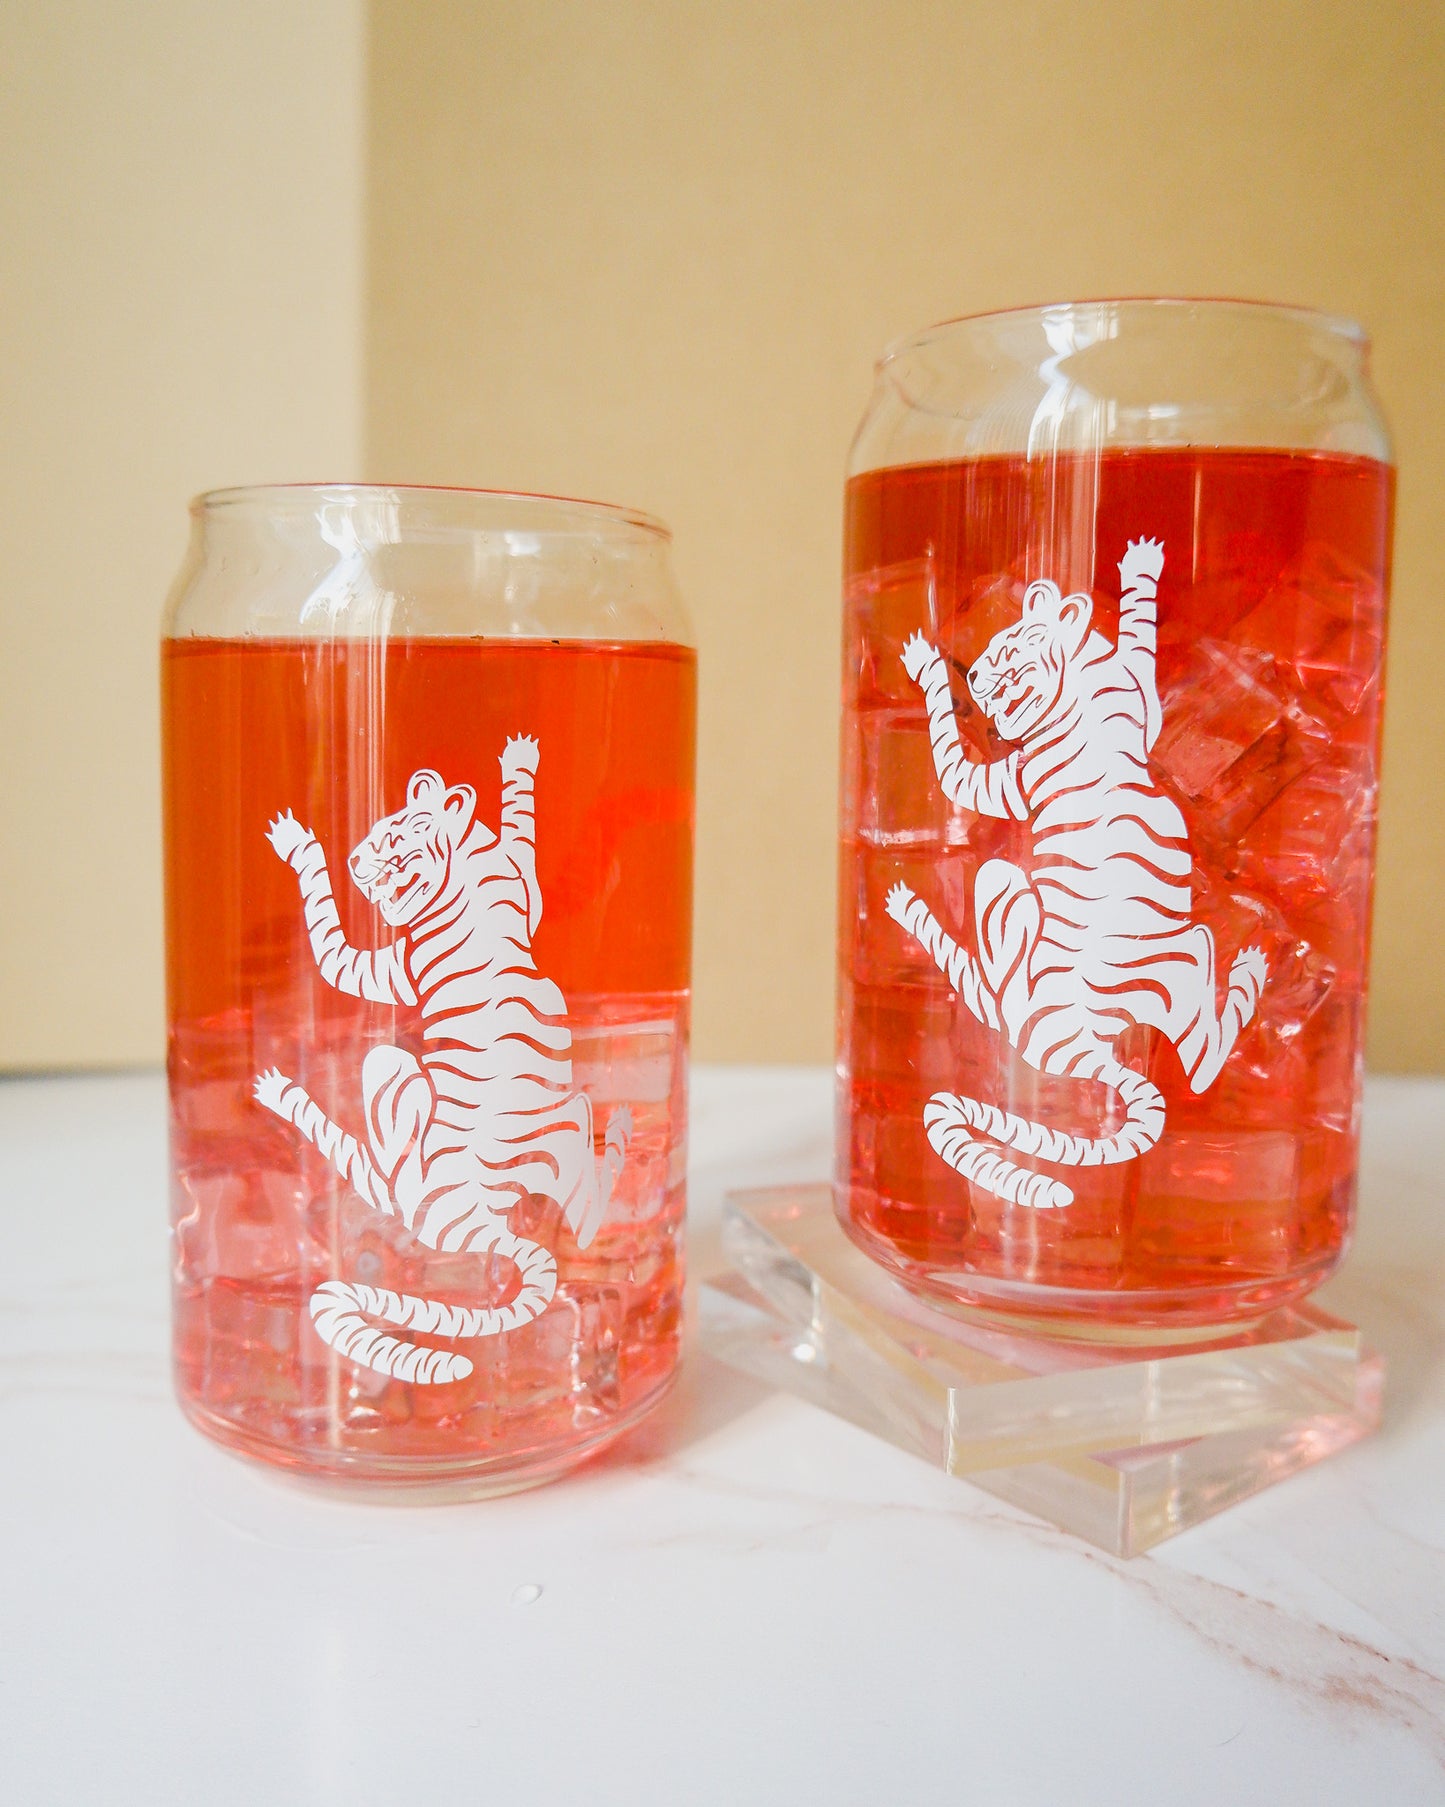 Tiger glass